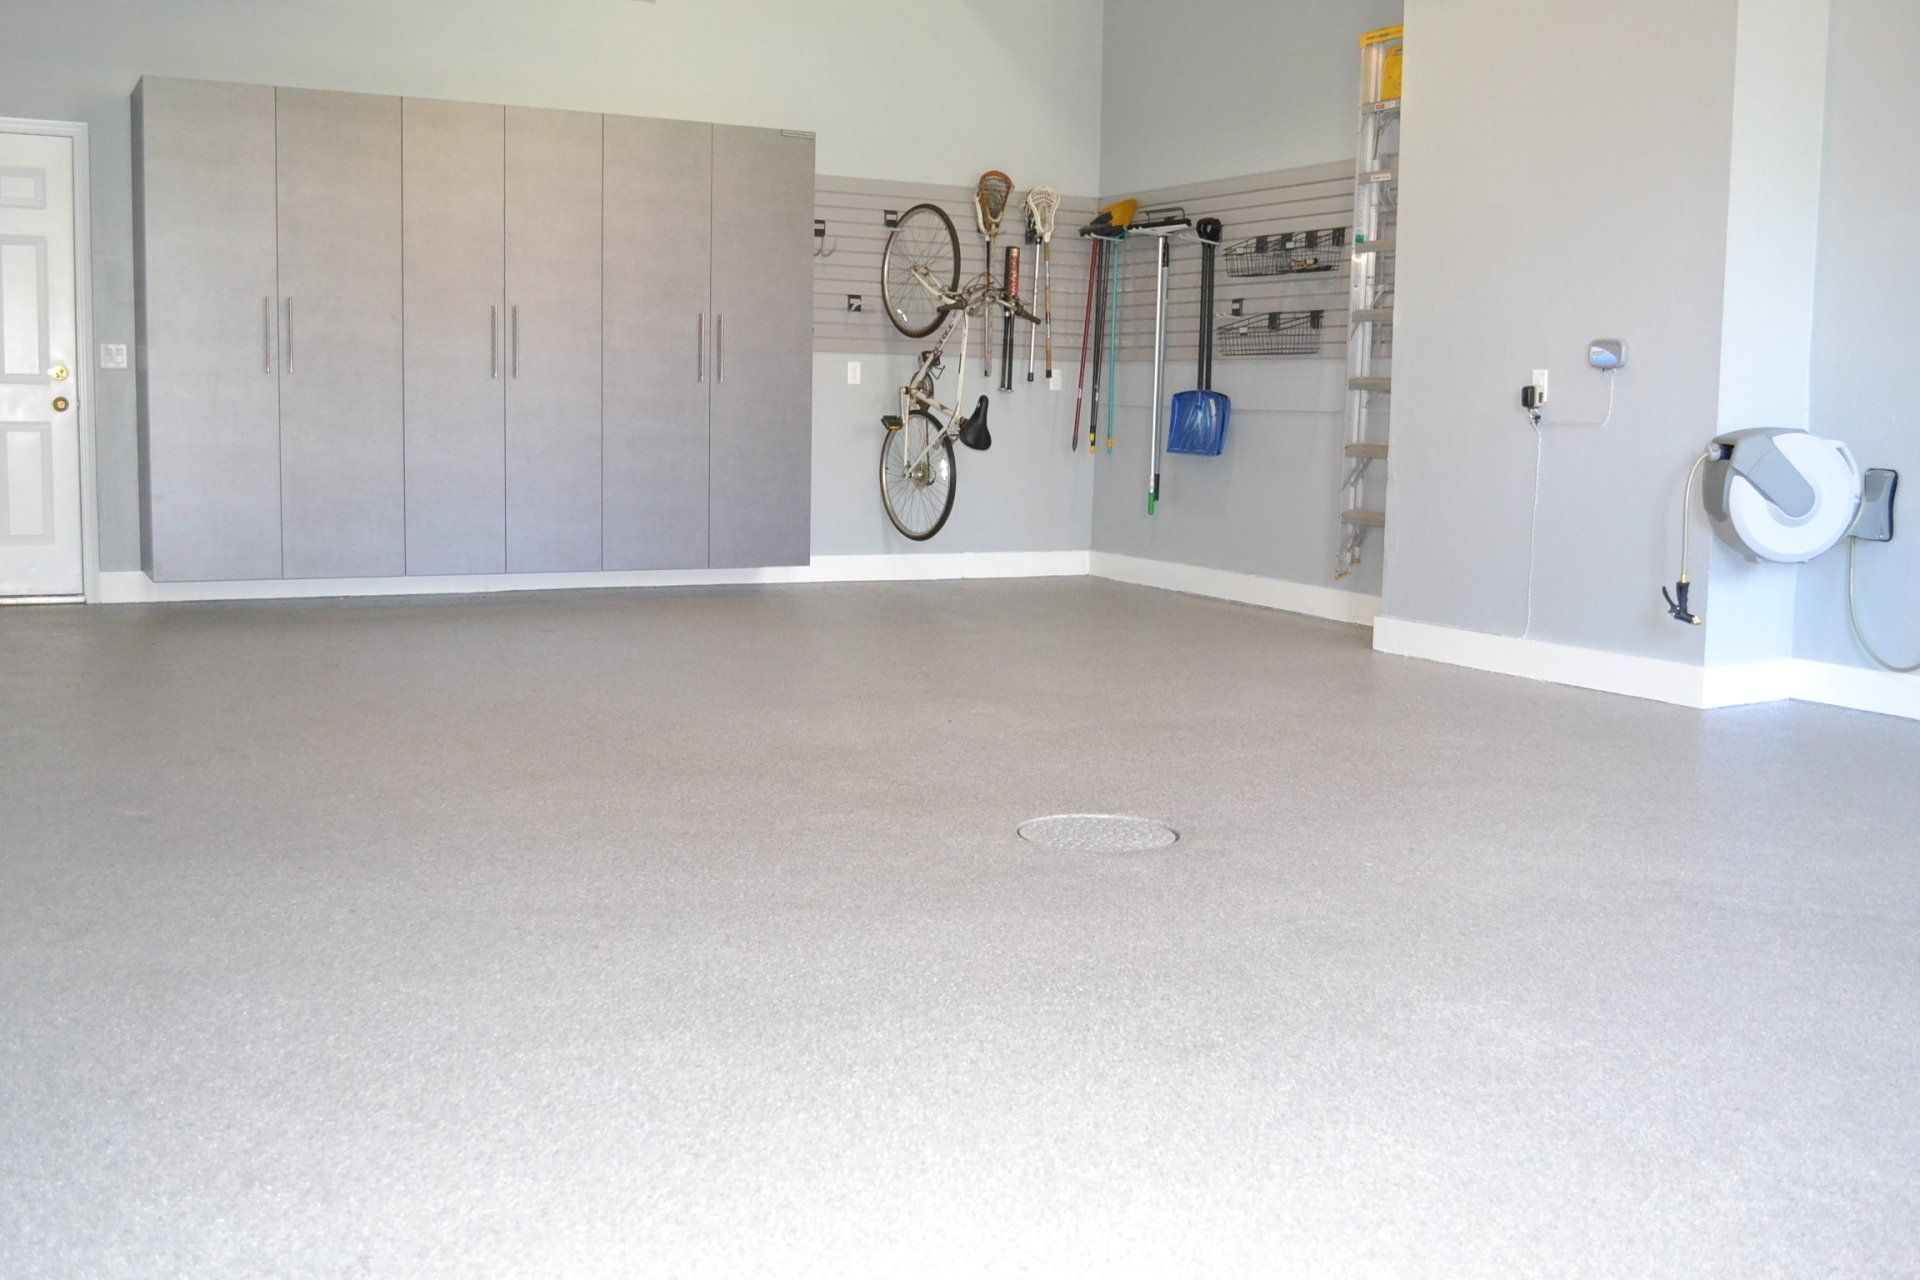 Choosing Garage Carpet Tiles